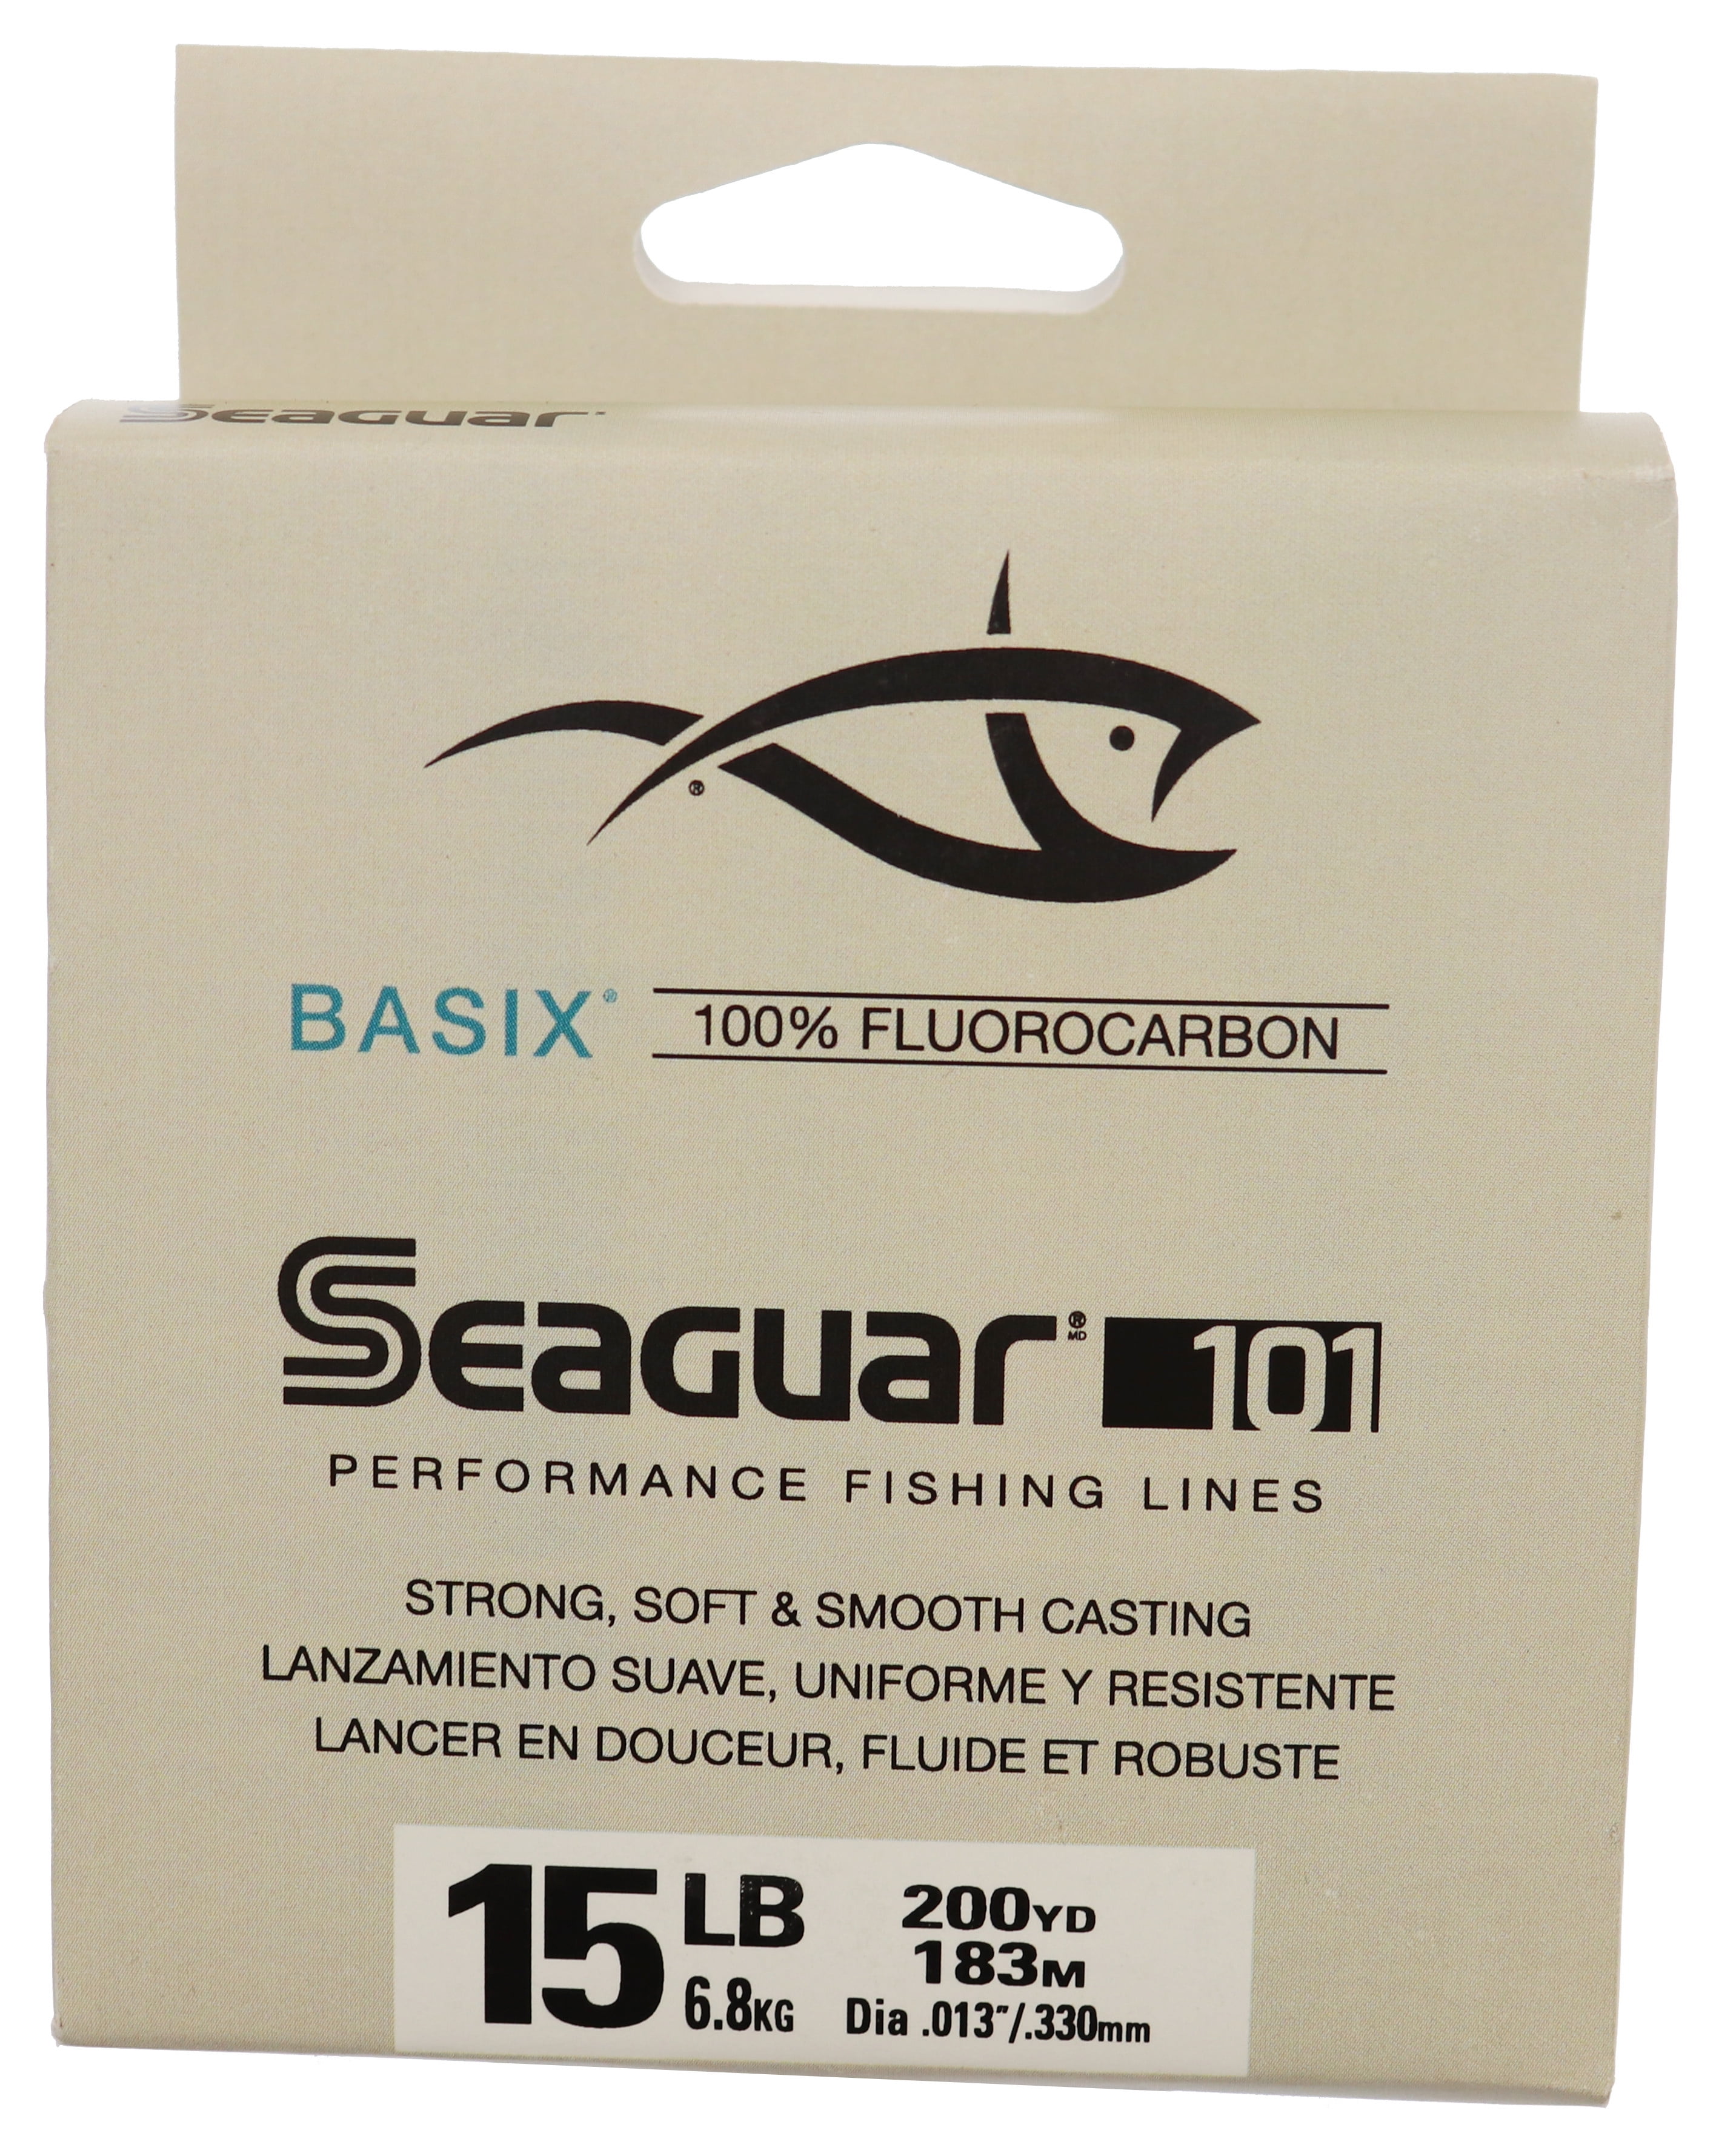 Seaguar AbrazX Fluorocarbon Line 15 lb.